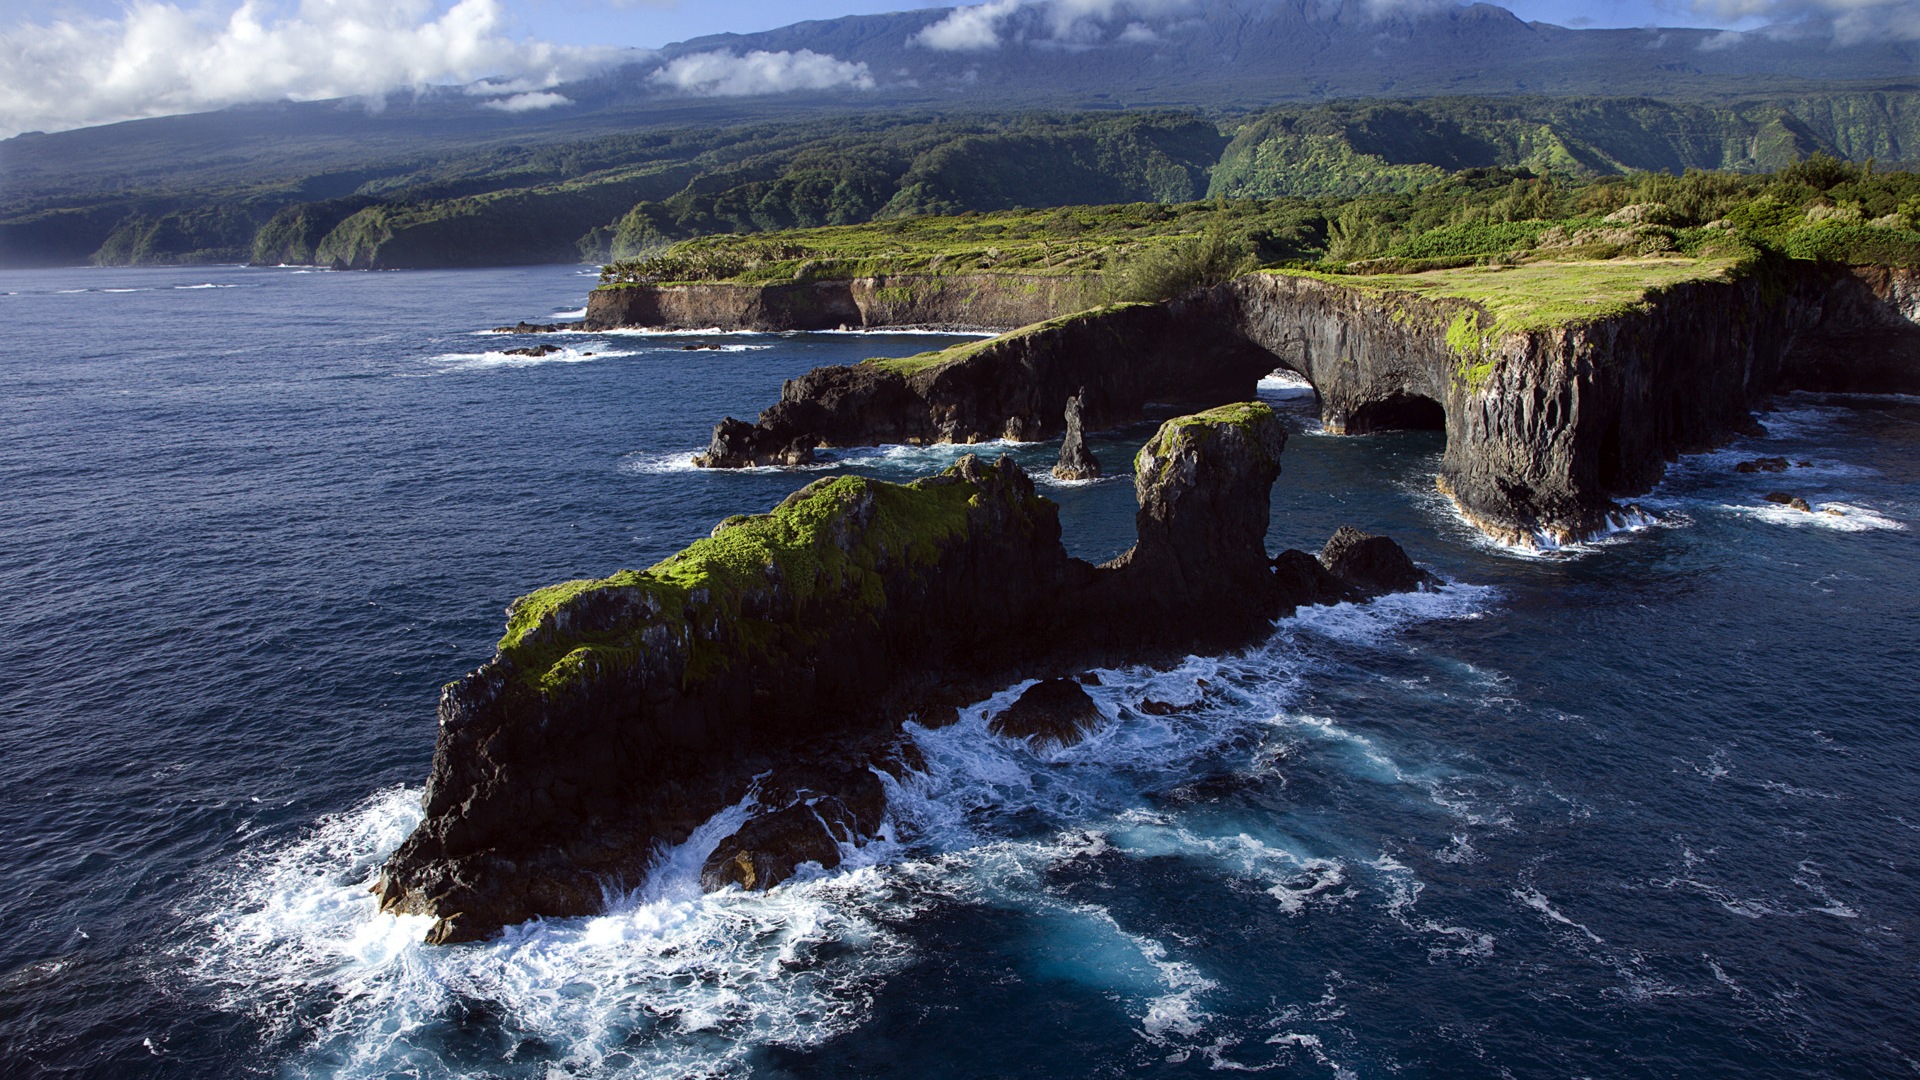 Windows 8 Theme Wallpaper: Hawaiian Landschaft #13 - 1920x1080